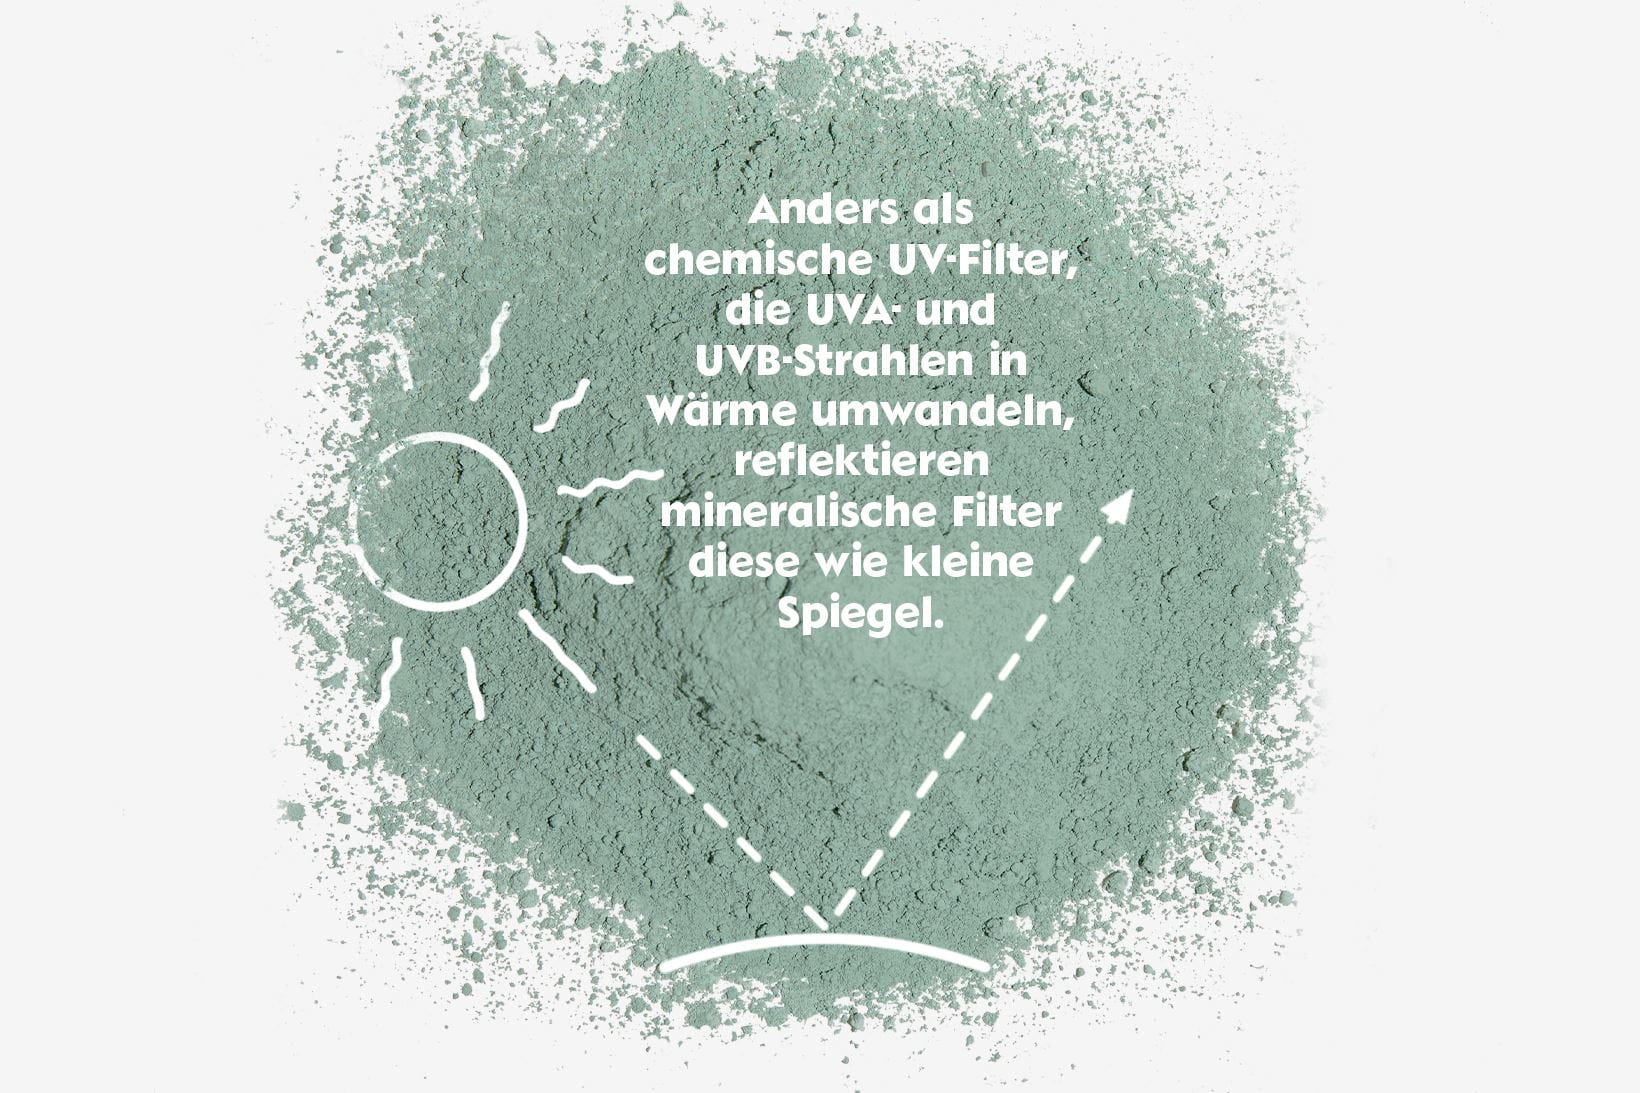 Wie funktionieren mineralische UV-Filter?